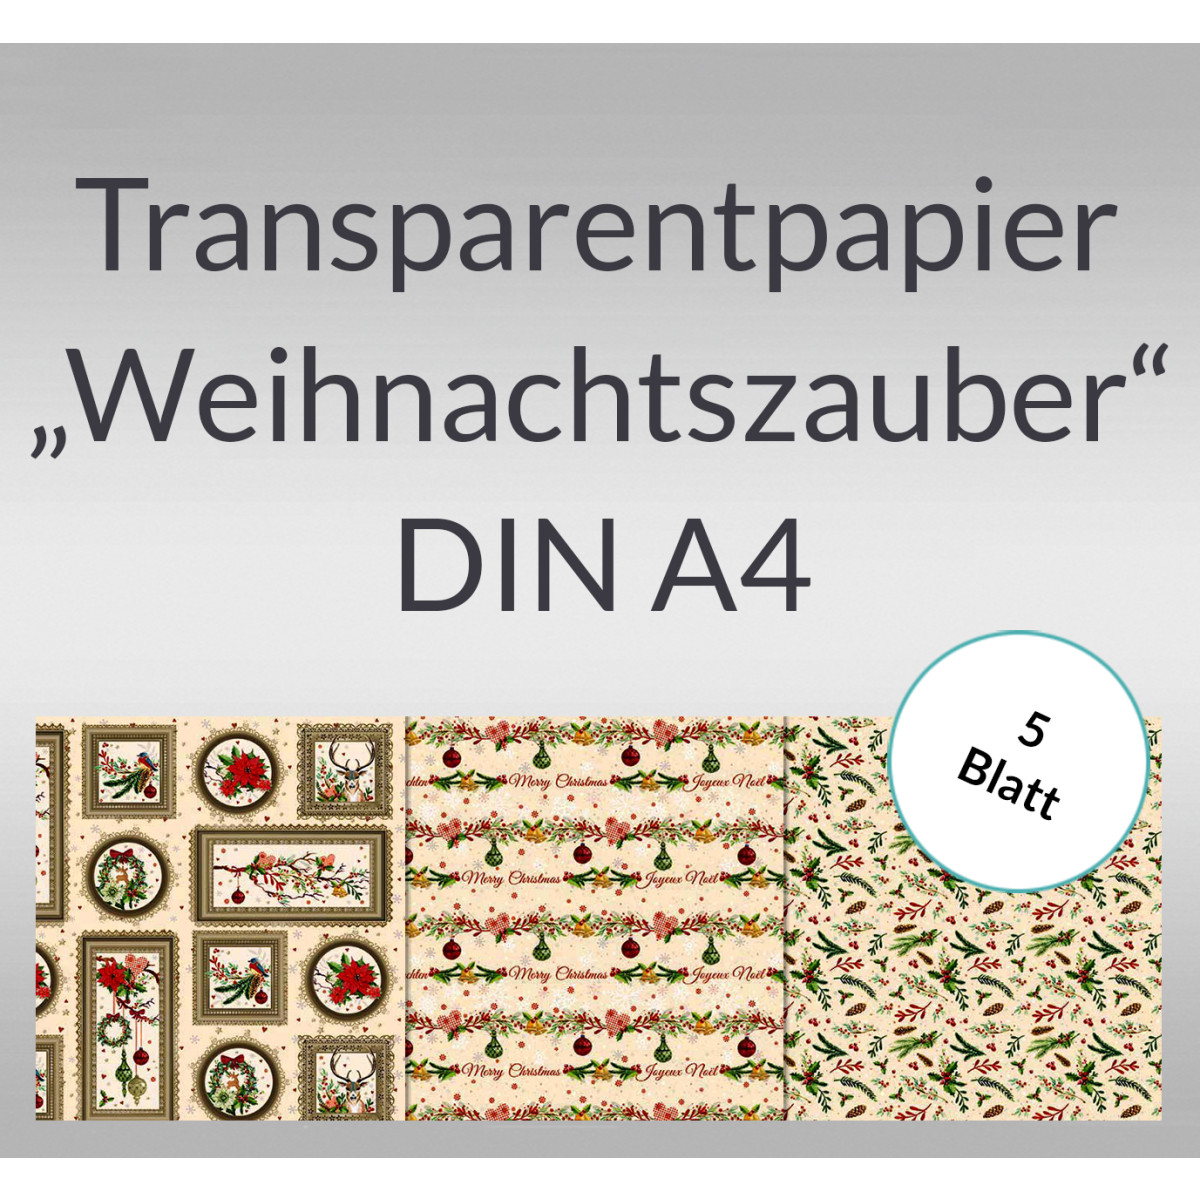 Transparentpapier "Weihnachtszauber" DIN A4 - 5 Blatt